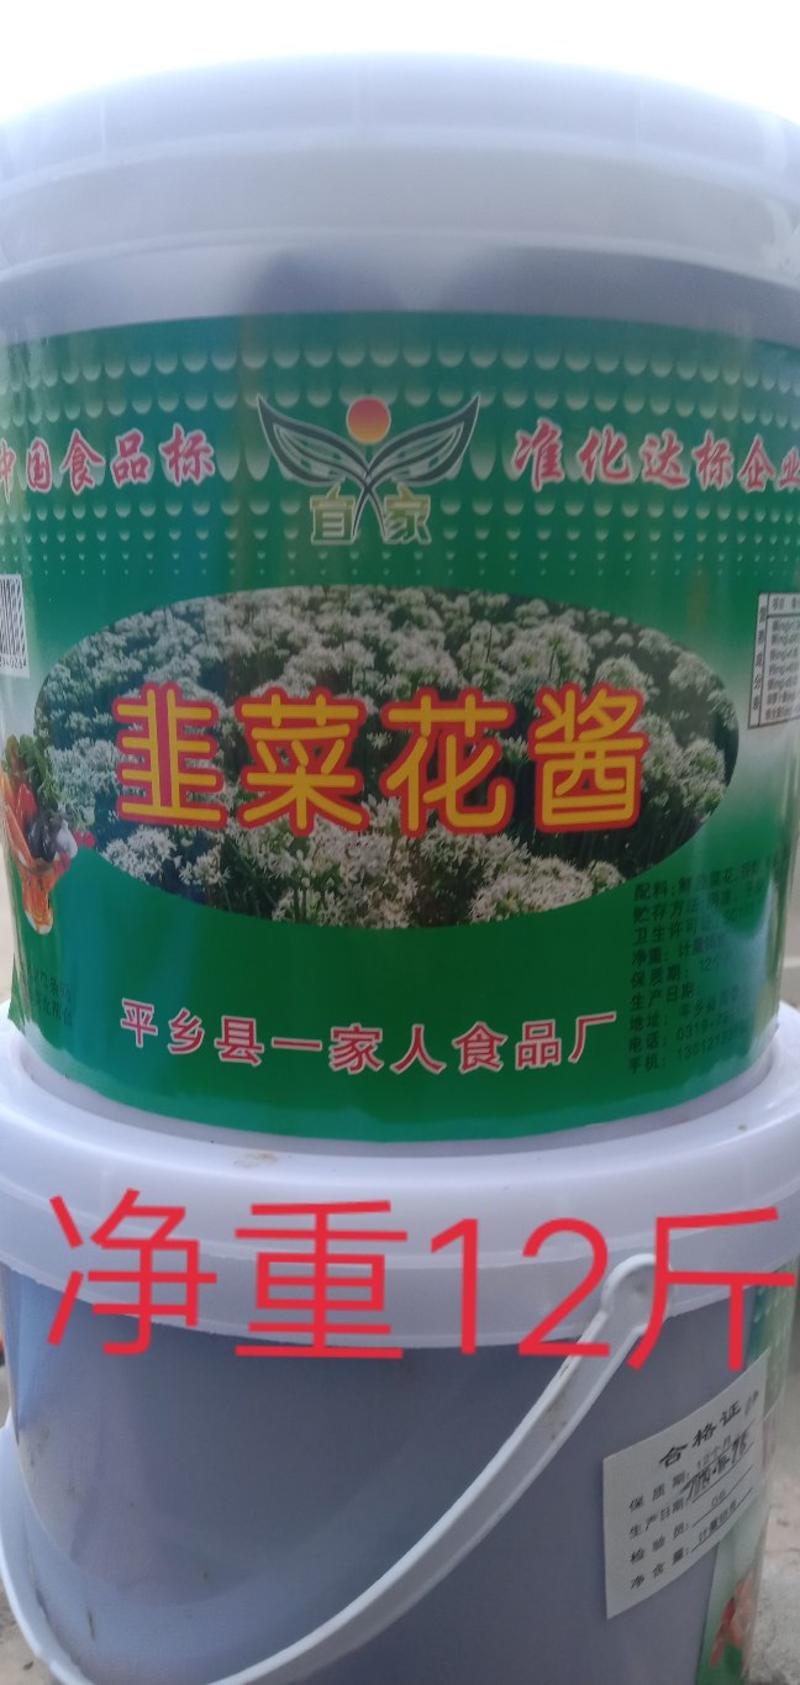 韭花酱（一家人产品系列）一家人食品厂驻郑州办事处。